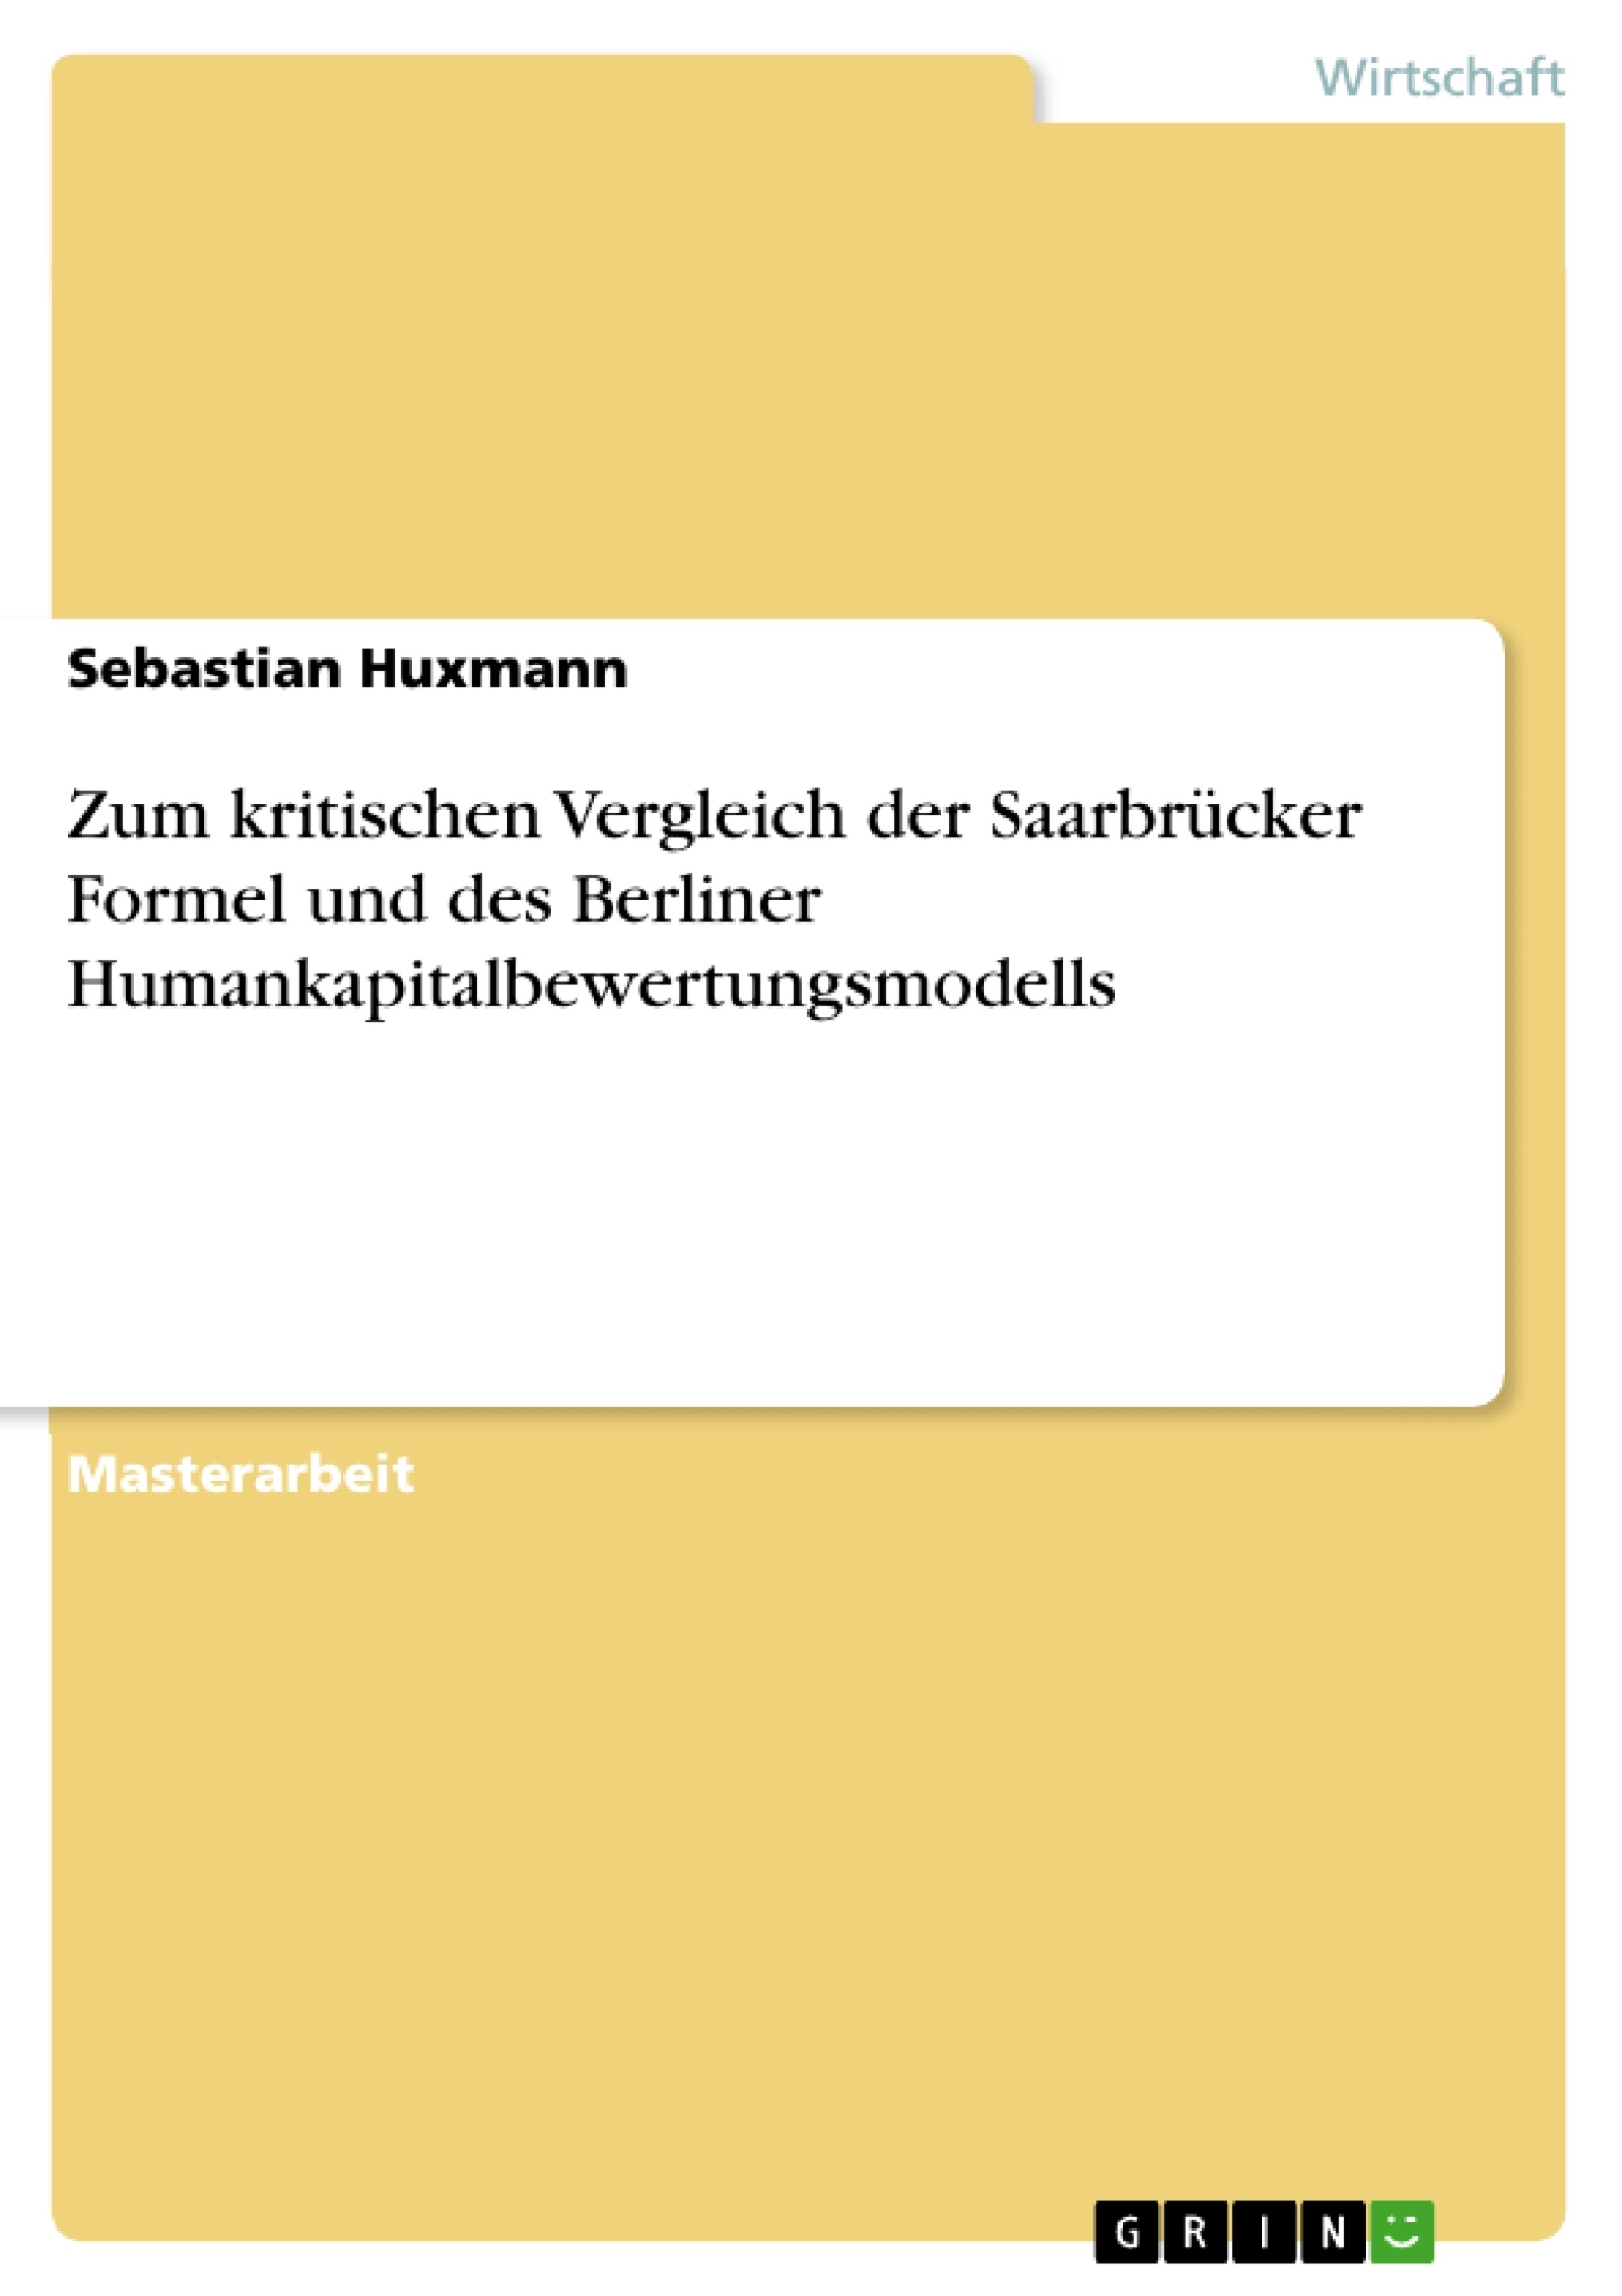 Titel: Zum kritischen Vergleich der Saarbrücker Formel und des Berliner Humankapitalbewertungsmodells